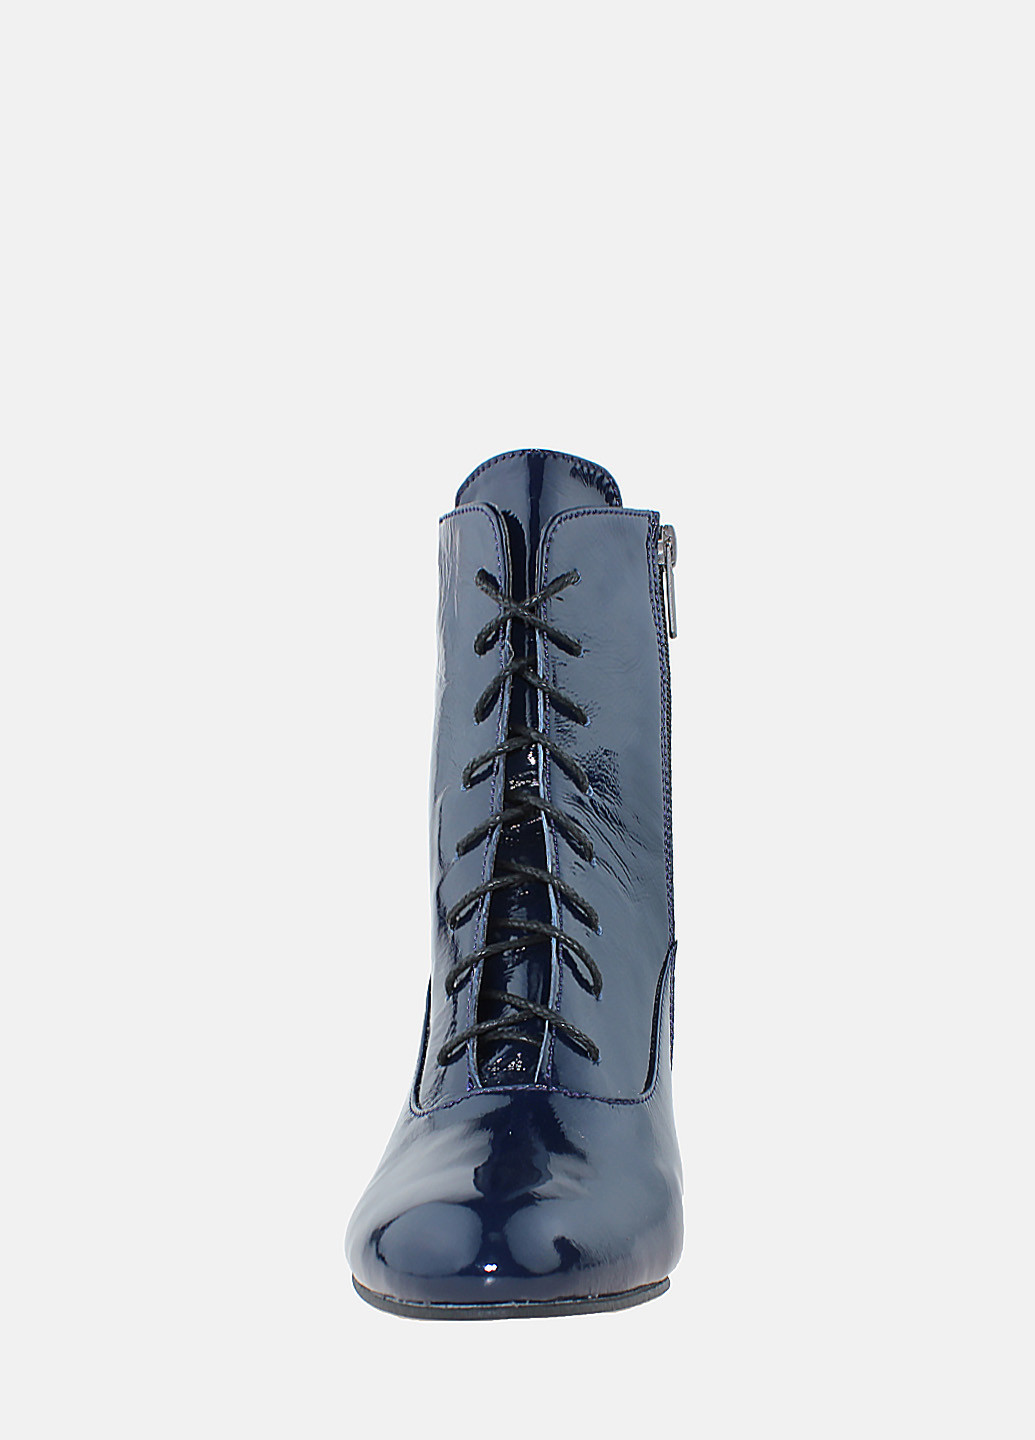 Зимние ботинки r0149b-9708-z61 синий Crisma